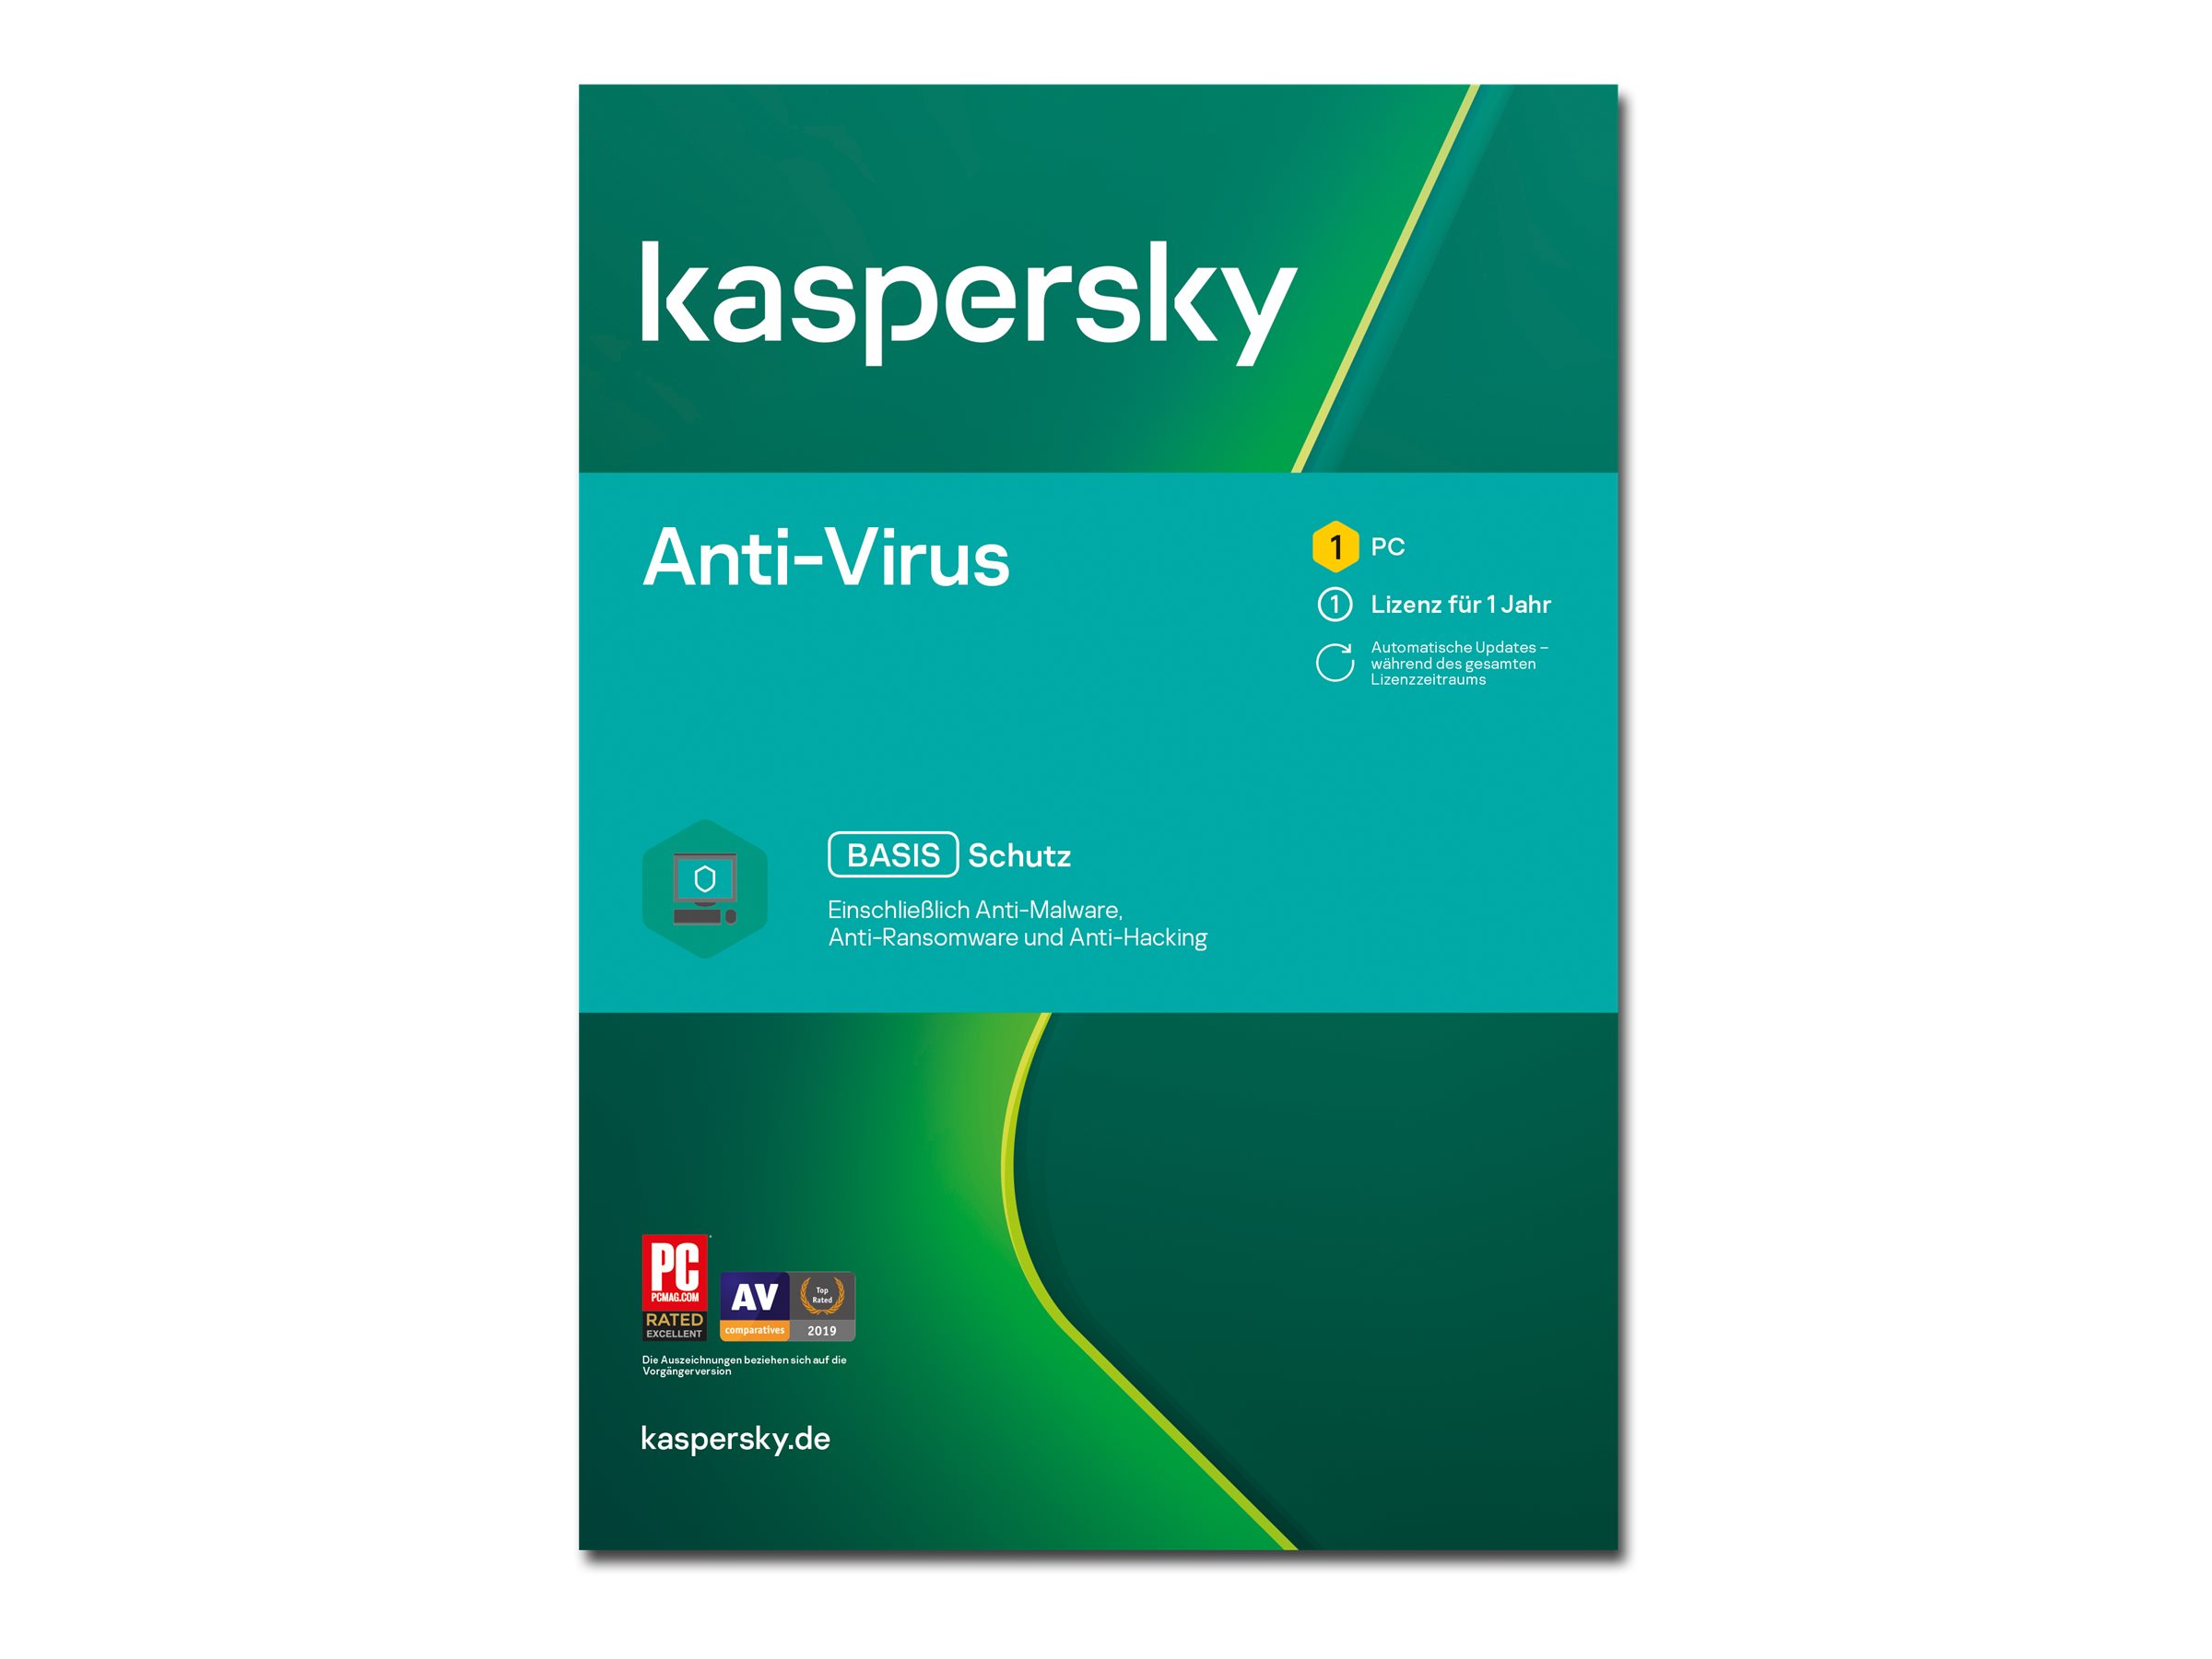 Kaspersky Anti-Virus - Erneuerung der Abonnement-Lizenz (1 Jahr)